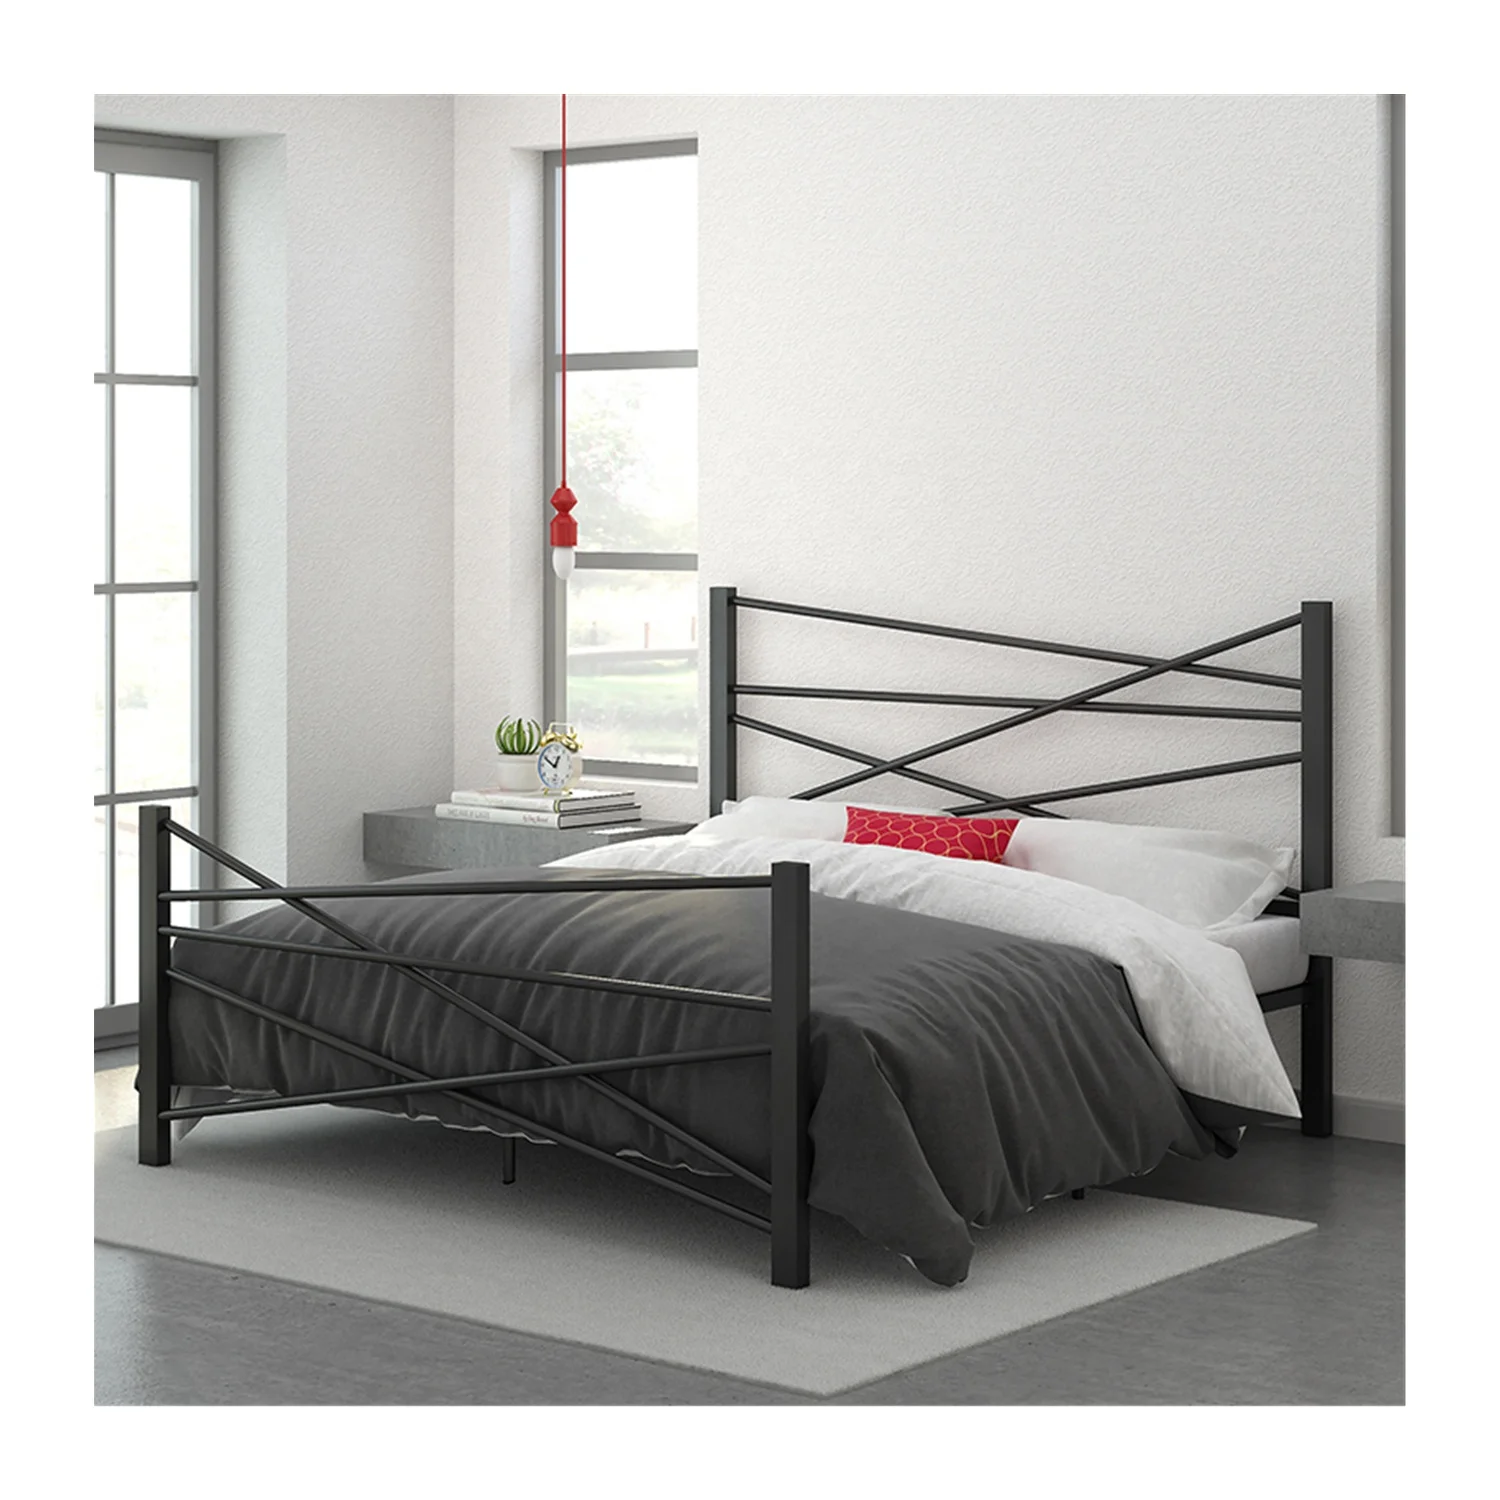 RTS Новейший дизайн Заводская поставка Привлекательная цена Мебель для спальни Металлические каркасы кроватей Бестселлер Изображение 0